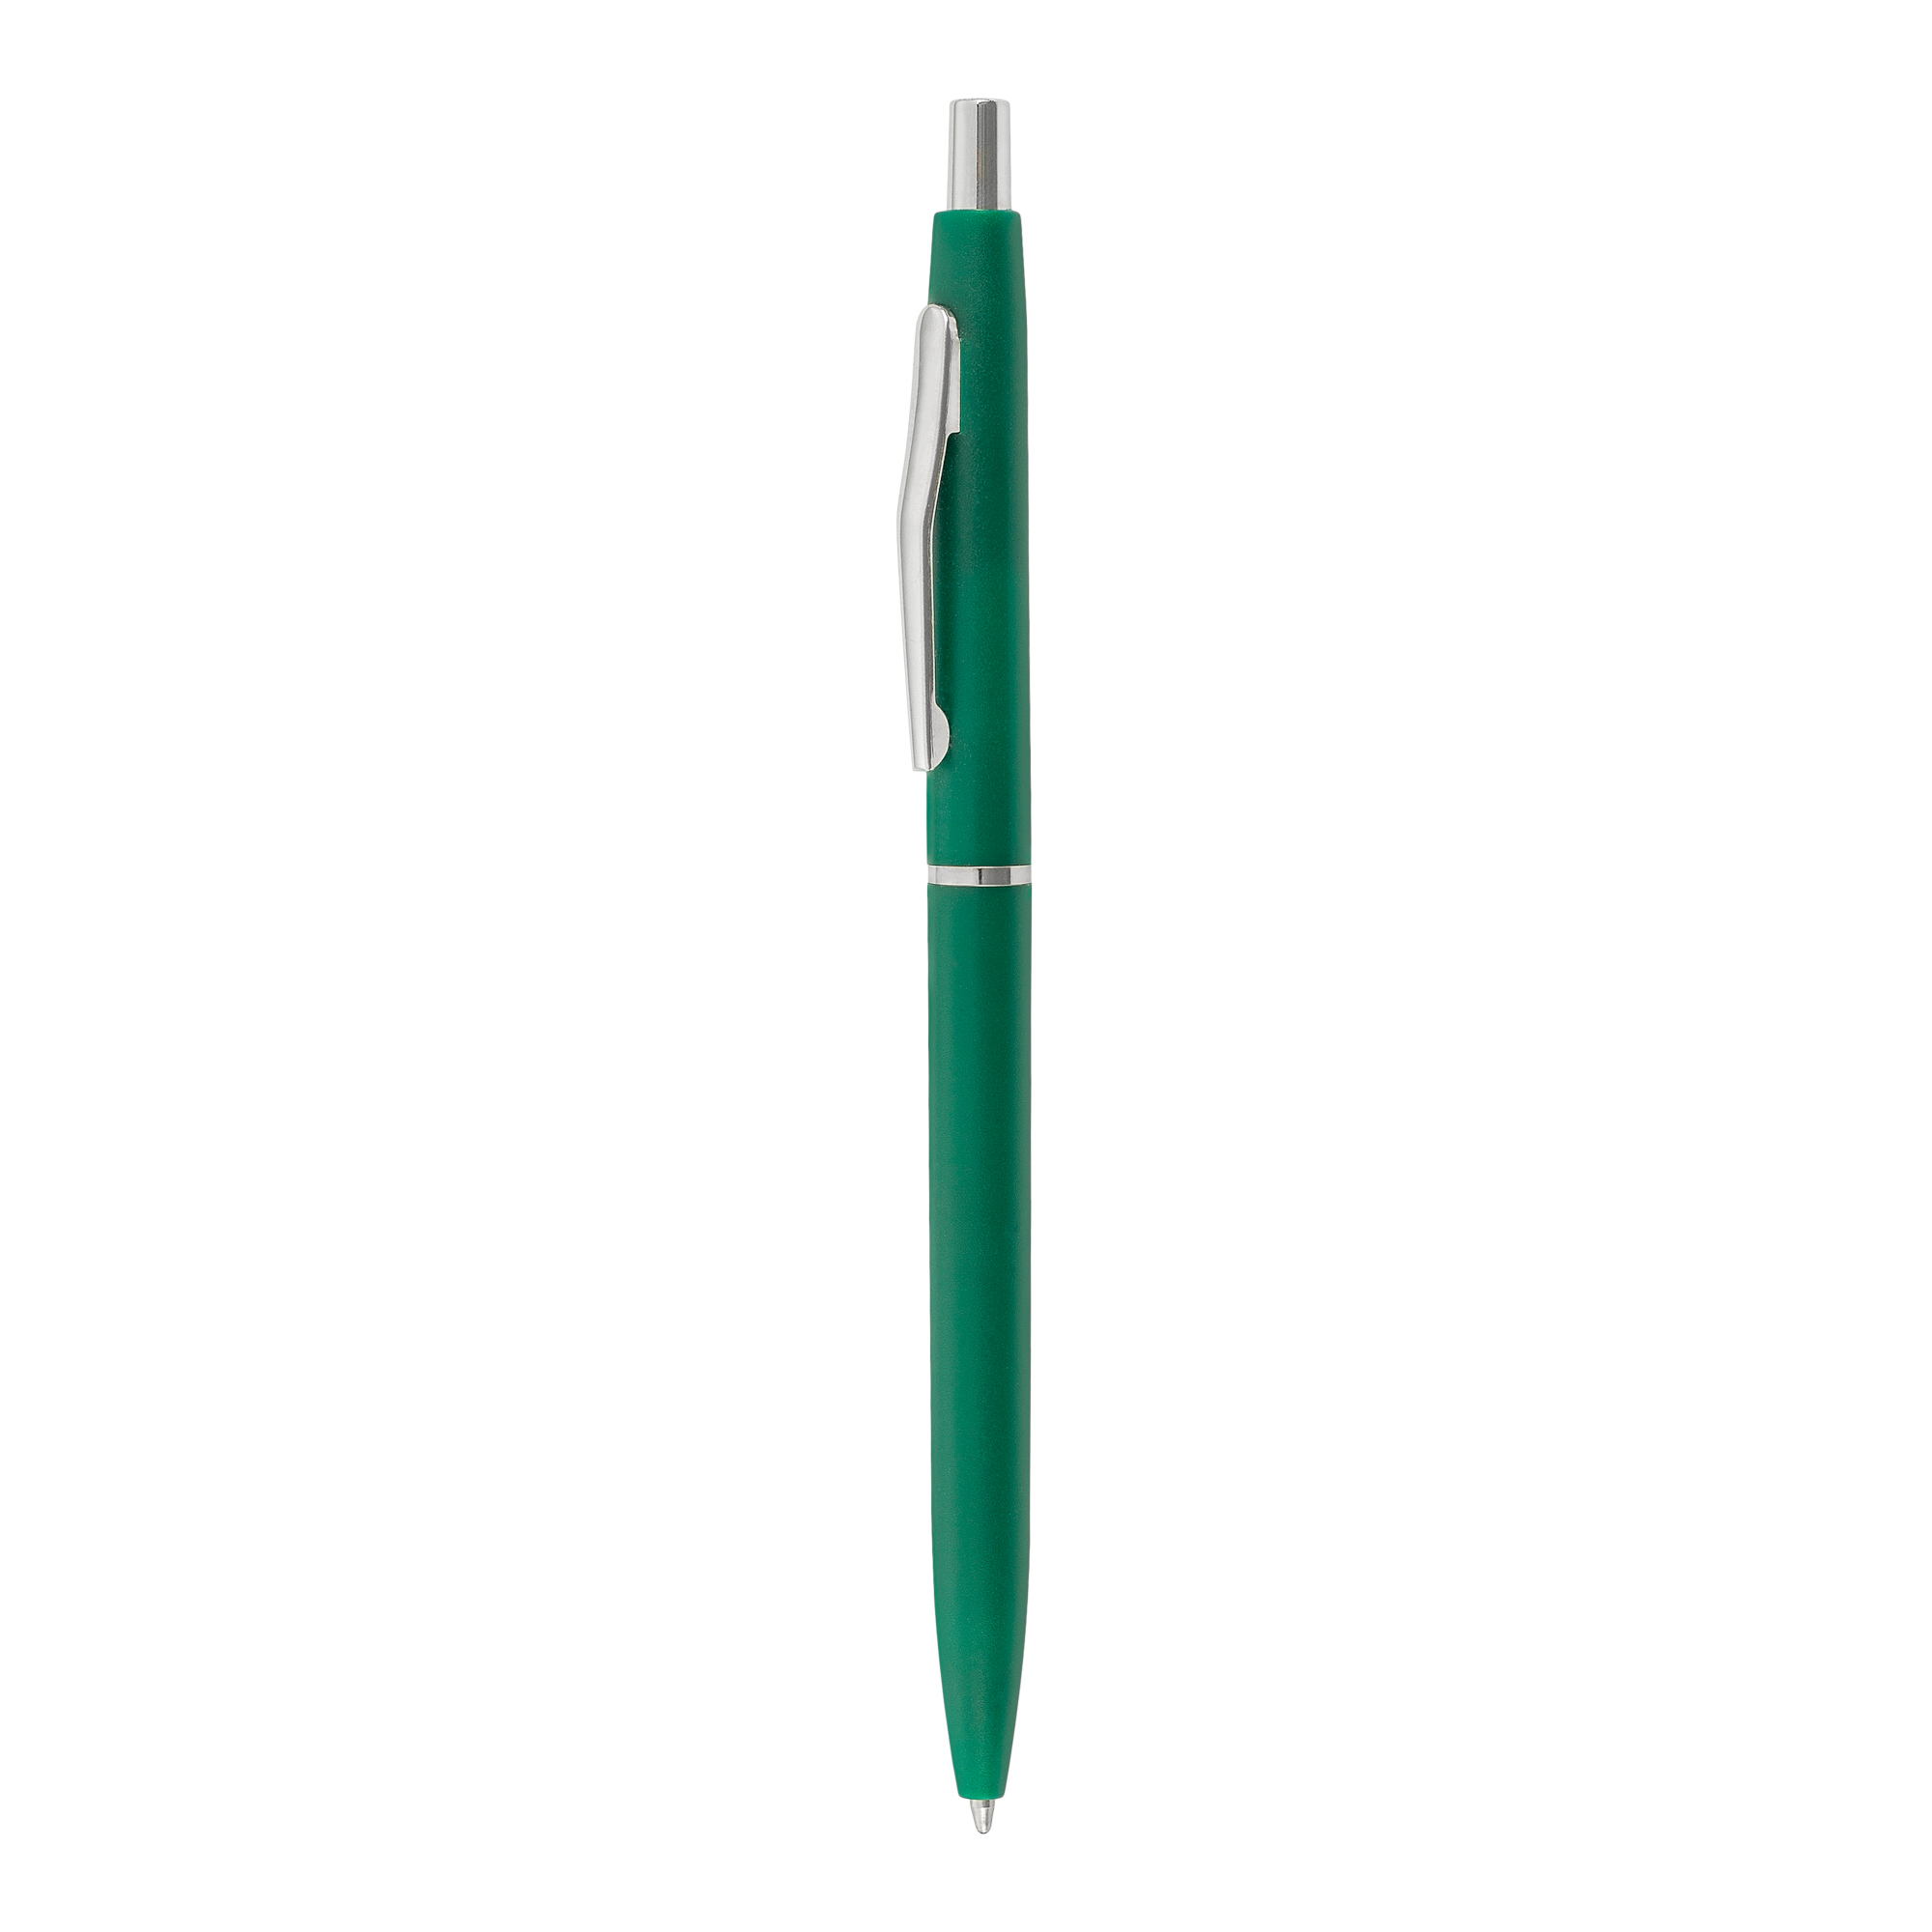 Bolígrafo Suite
Color verde y plateado